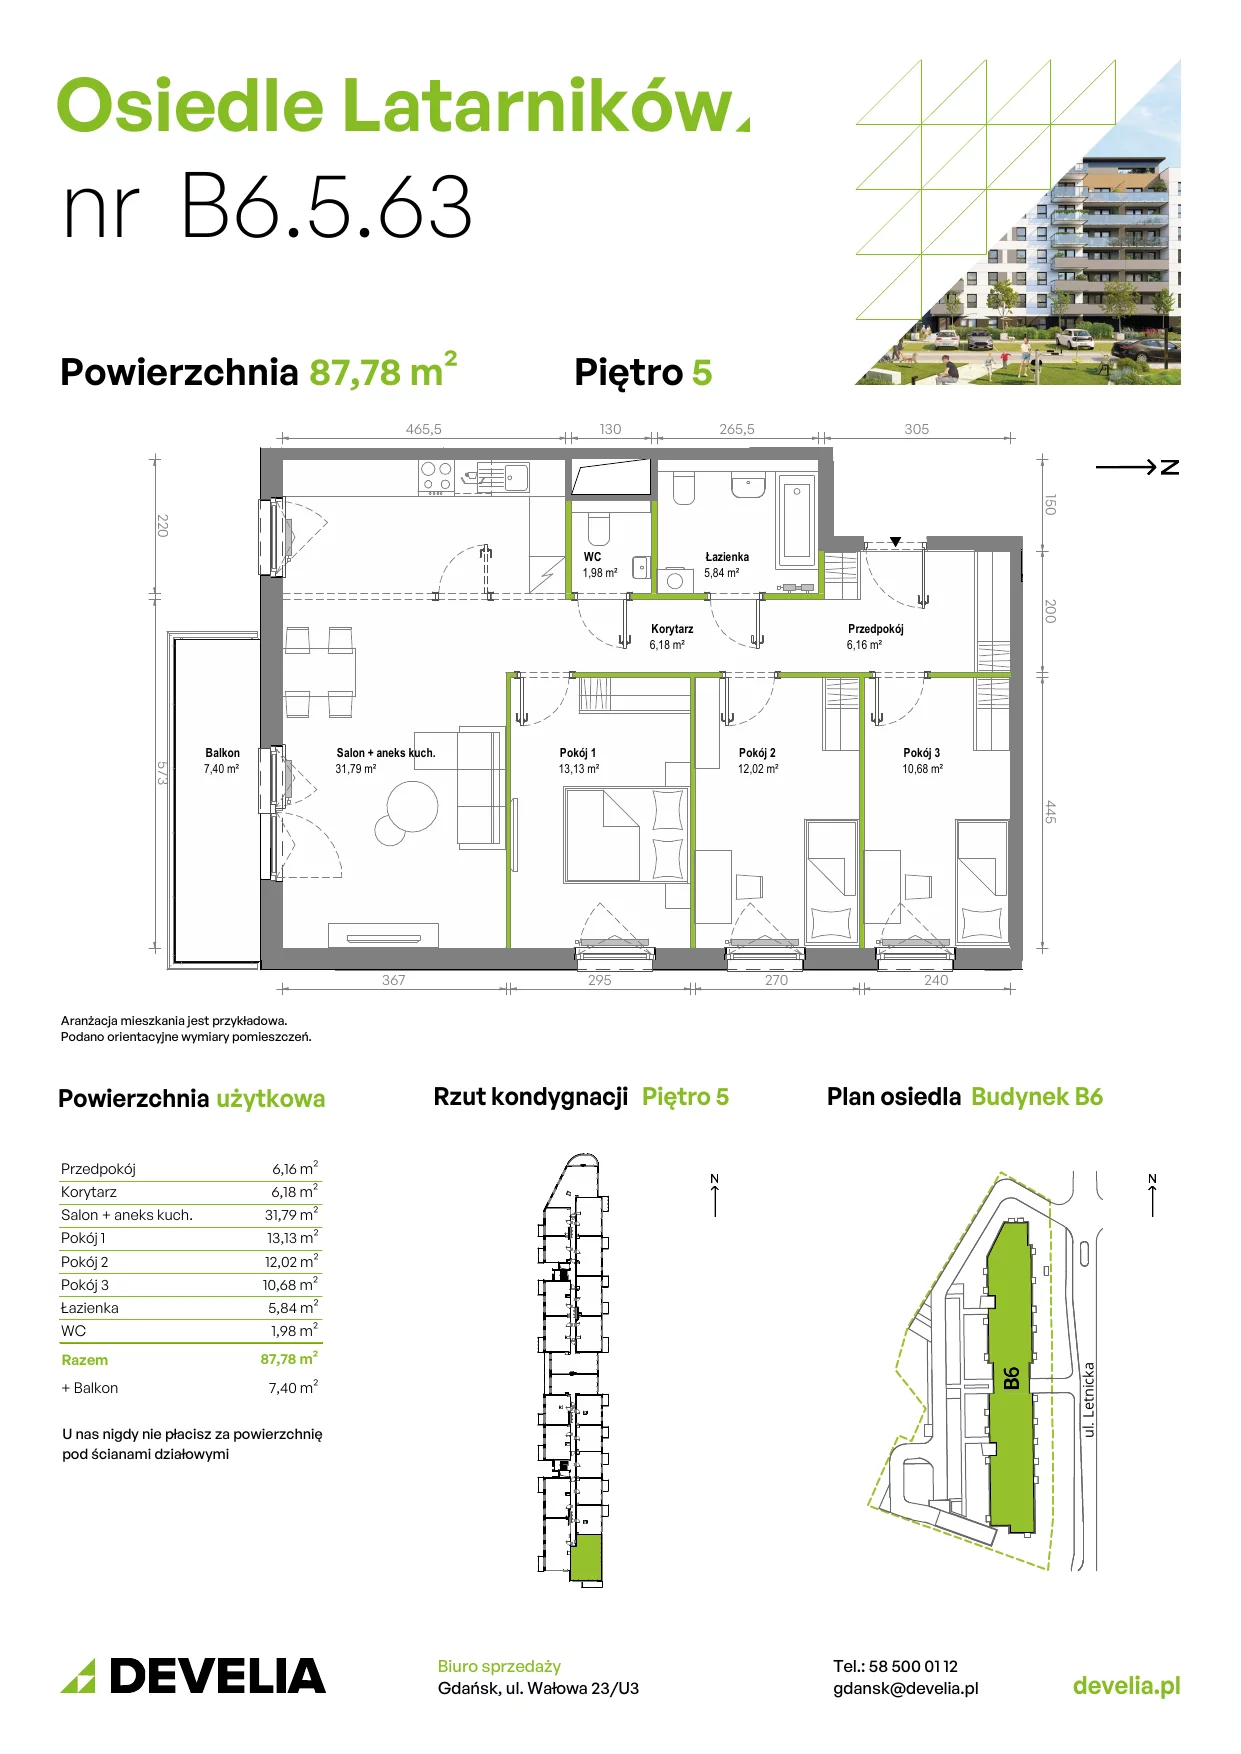 Mieszkanie 87,72 m², piętro 5, oferta nr B6.5.063, Osiedle Latarników, Gdańsk, Letnica, ul. Letnicka 1